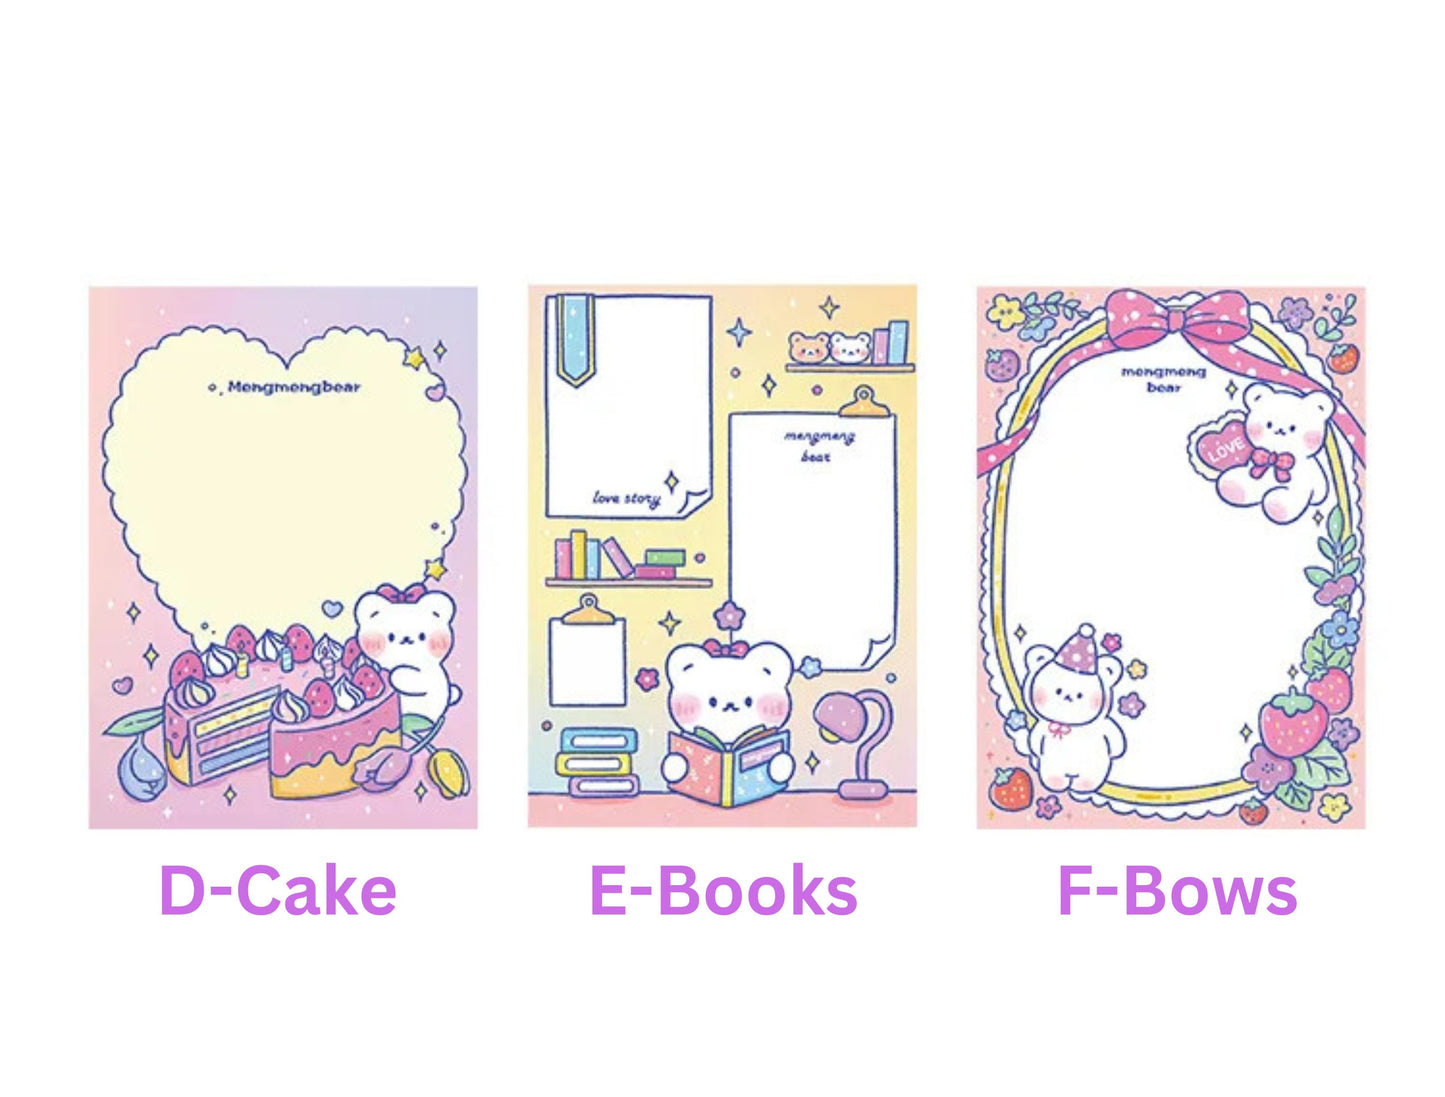 100 Sheets Cute Kawaii Bear Memo Pad, Kawaii To Do List, Stationary, Cute Notepads, Kawaii Bear Notepad, Rainbow Bears and Hearts Stationary